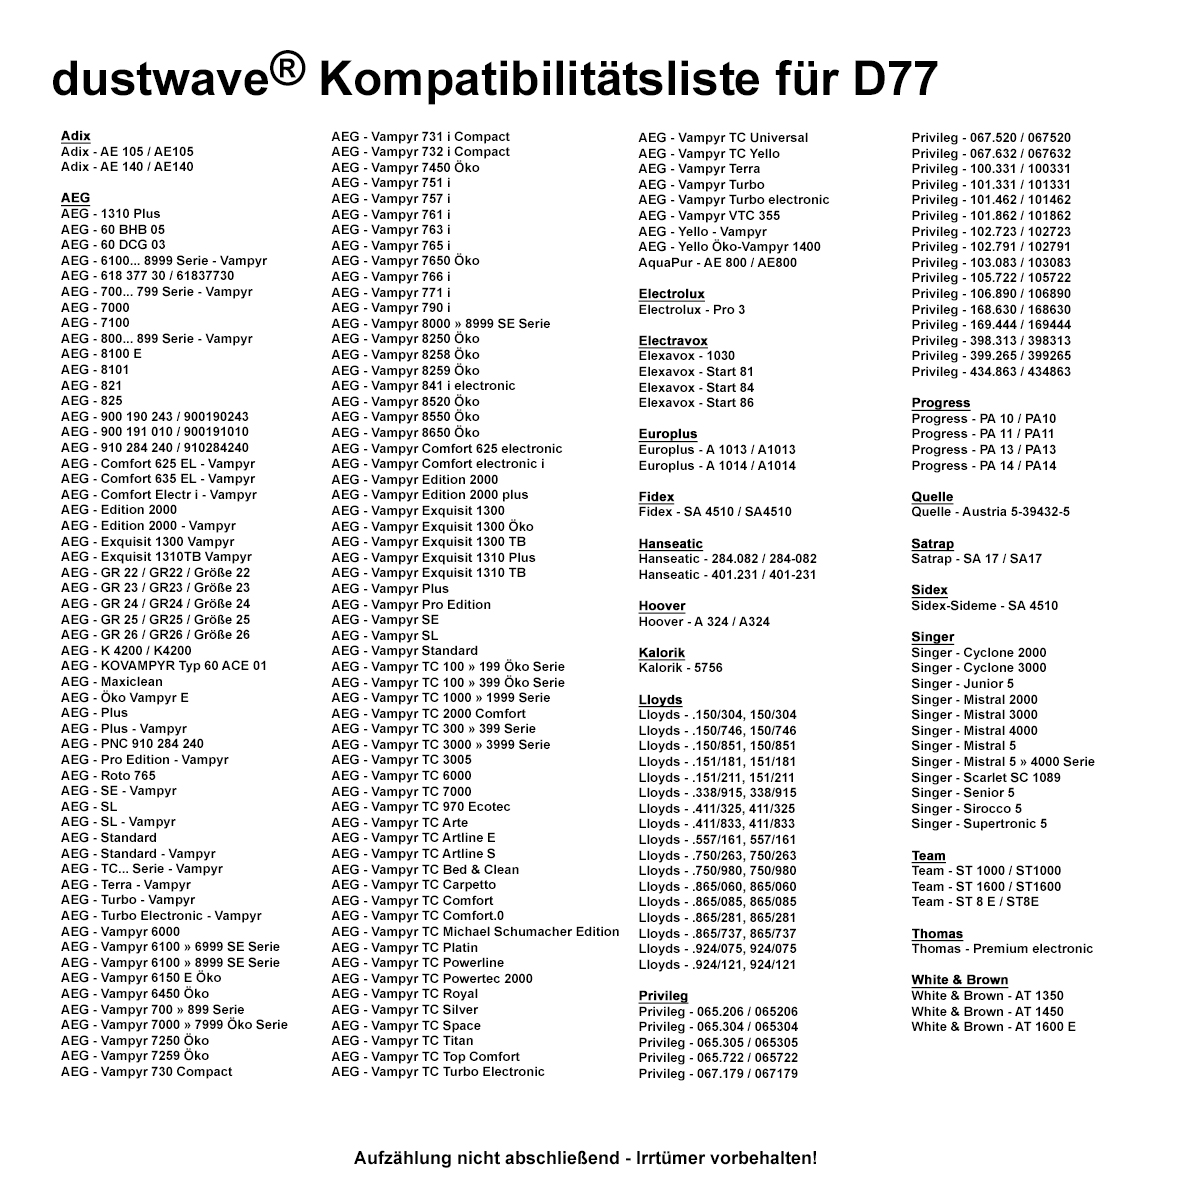 Dustwave® 1 Staubsaugerbeutel für AEG Vampyr 761 i Electronic - hocheffizient, mehrlagiges Mikrovlies mit Hygieneverschluss - Made in Germany